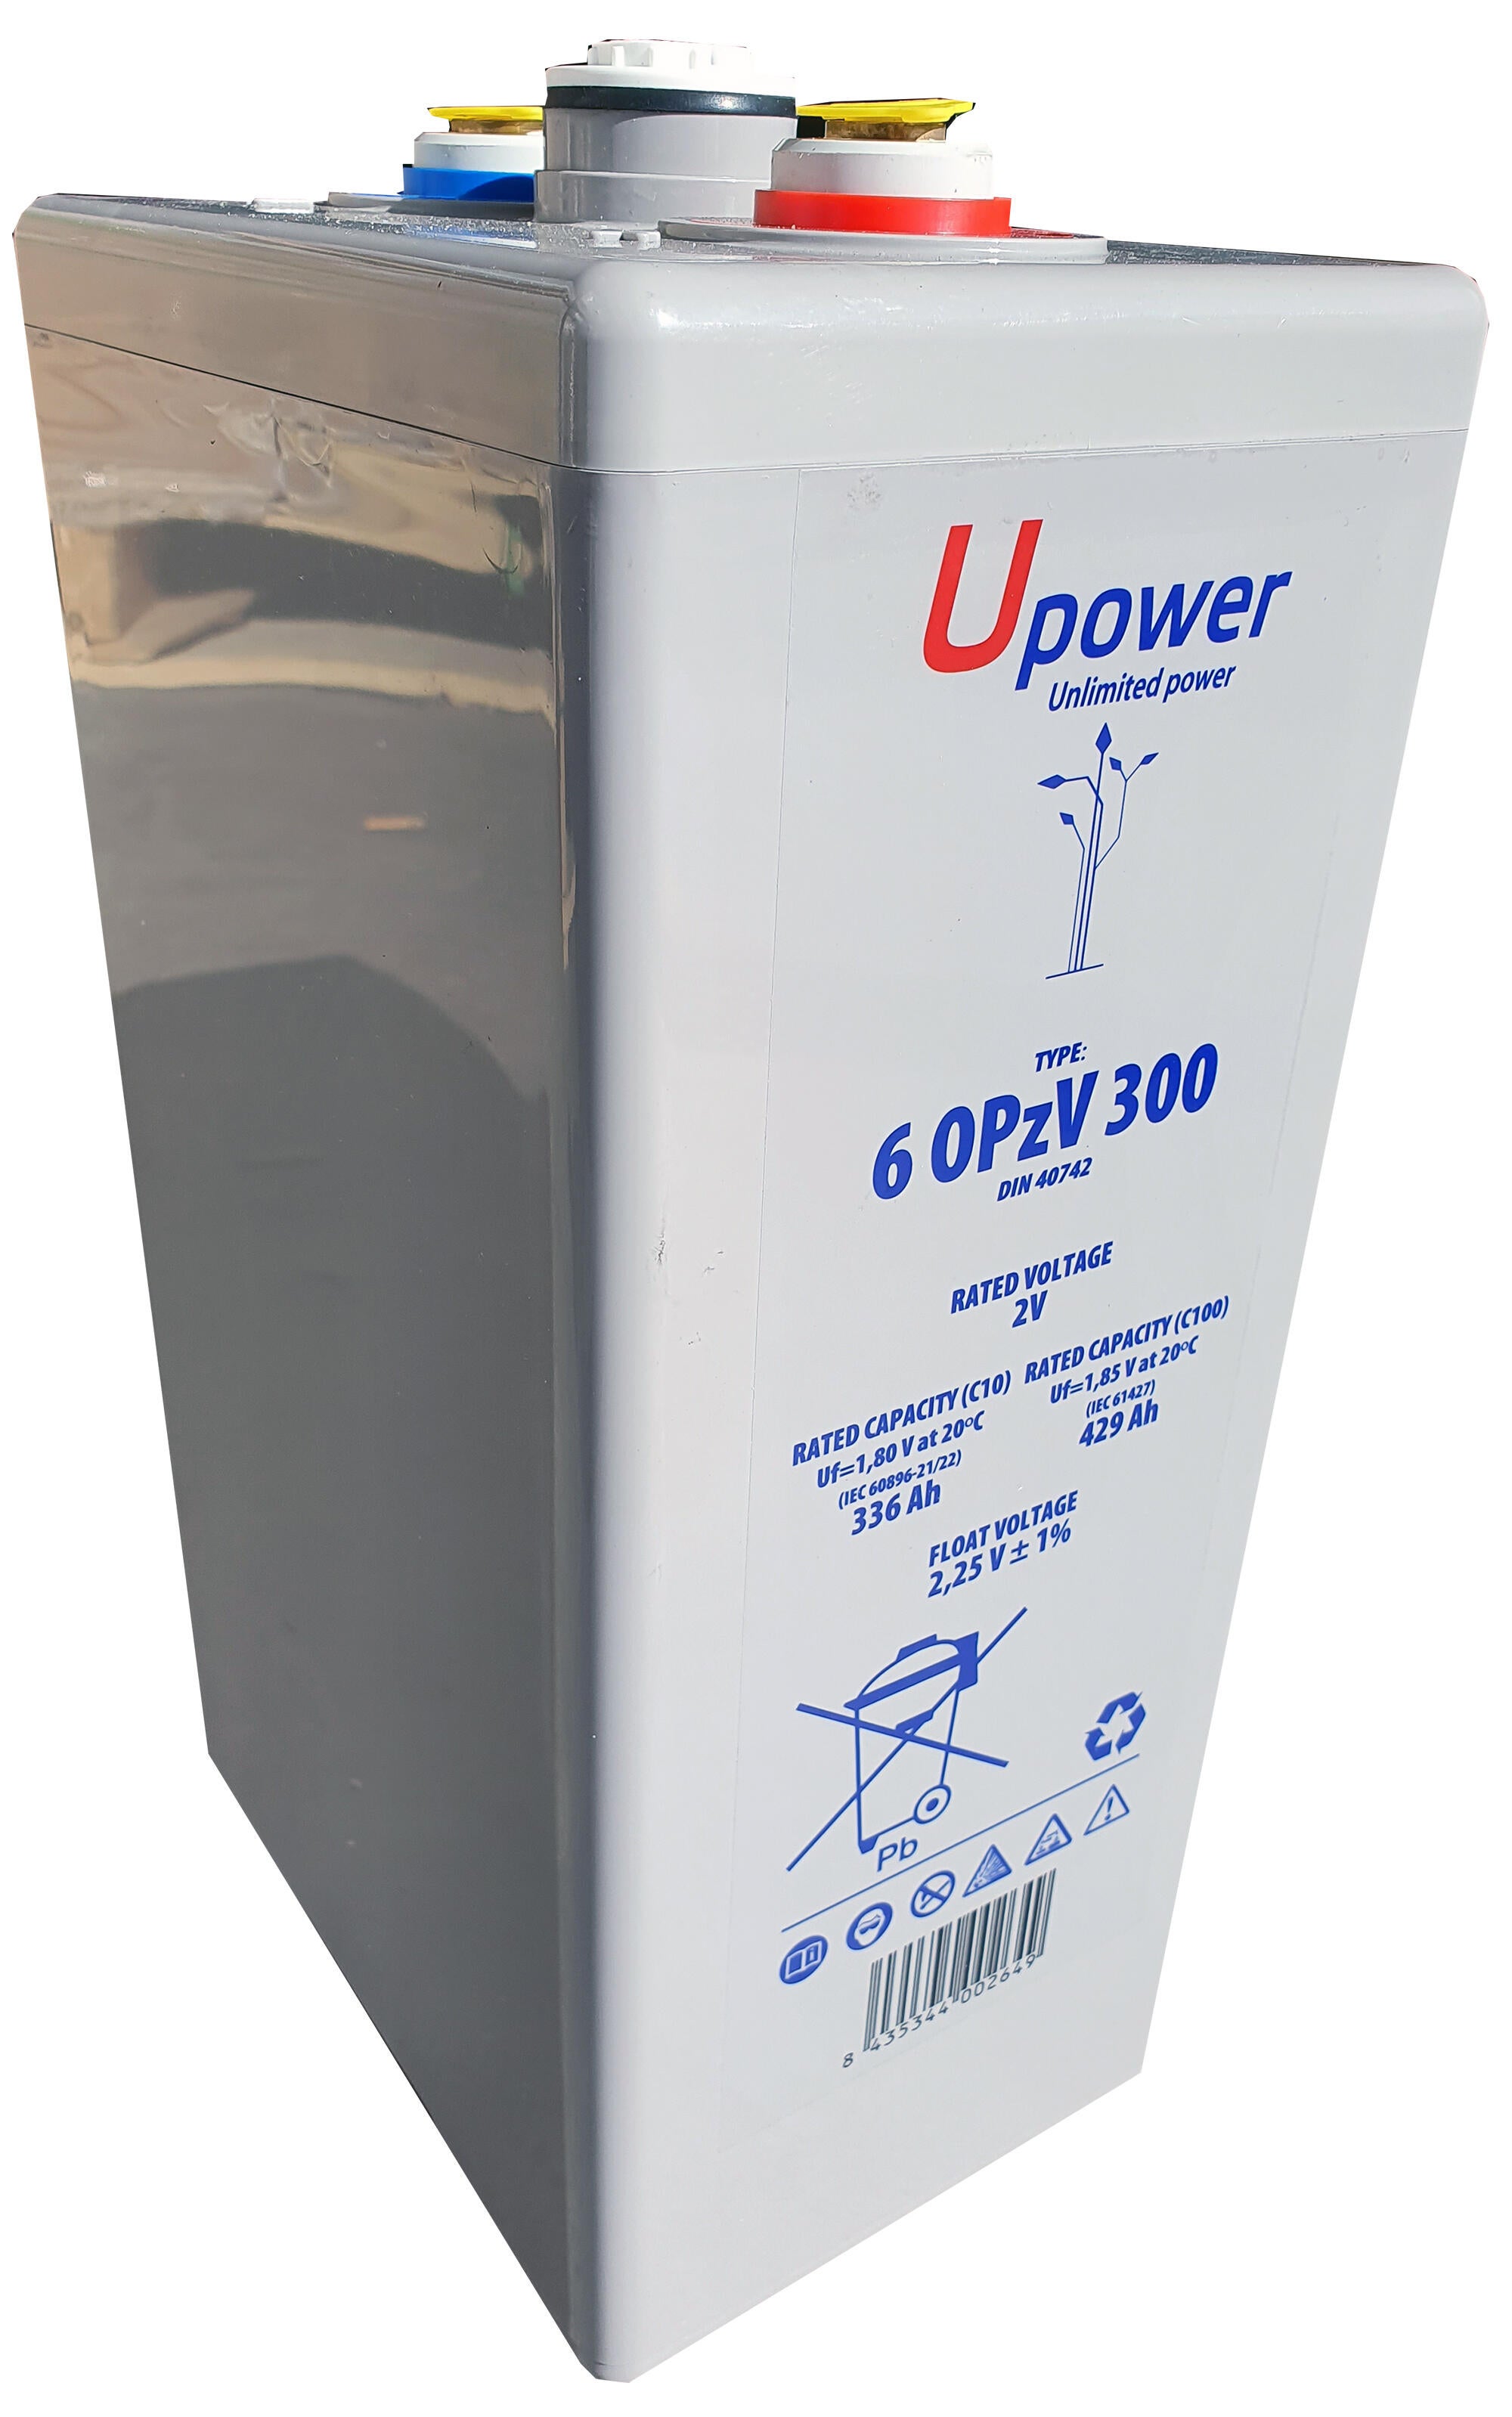 Batería solar estacionaria de gel u-power 6 opzv 300 2v c100 437ah